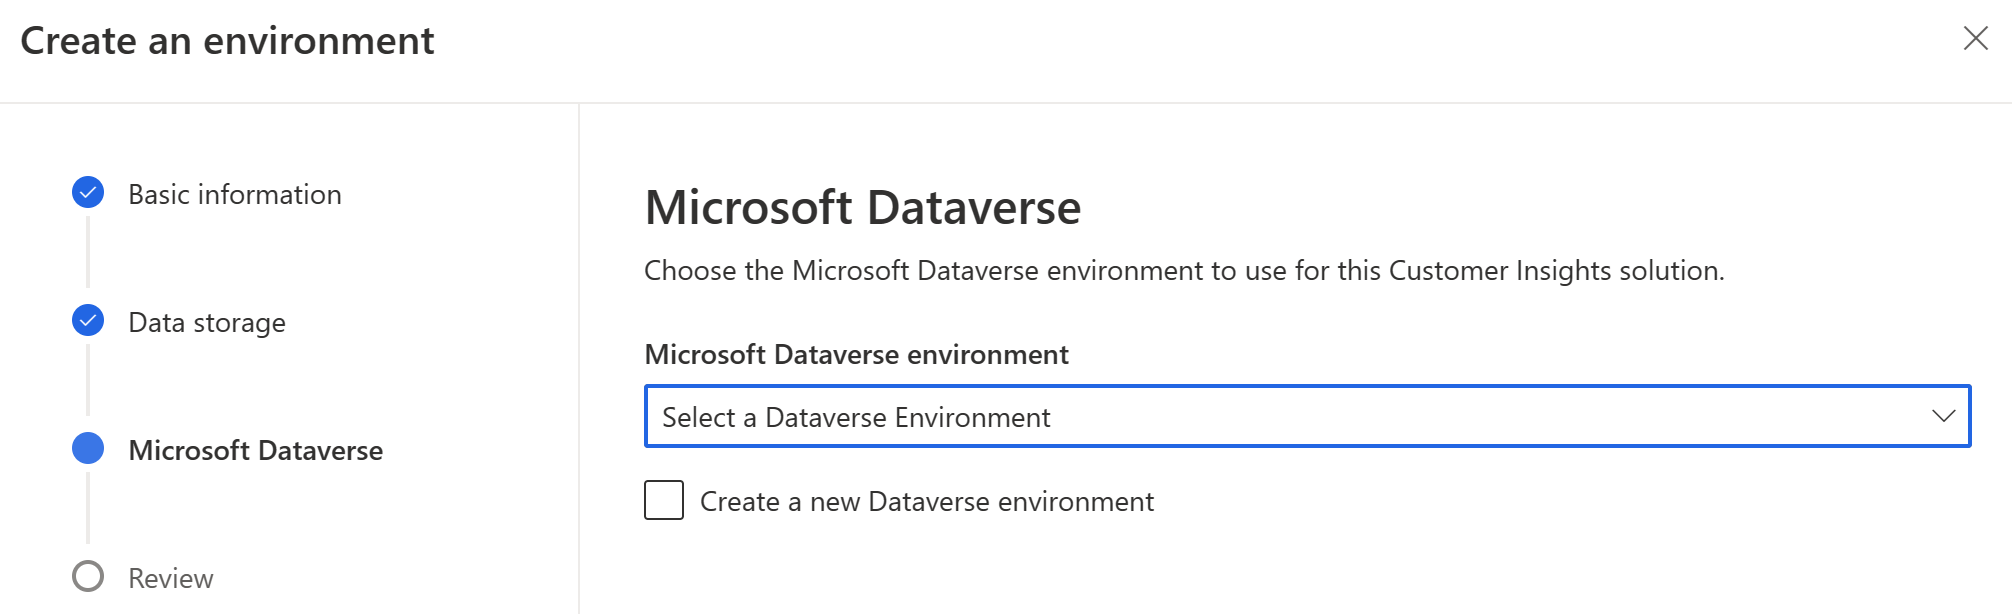 udostępnianie danych z włączoną automatycznie obsługą Microsoft Dataverse dla nowych środowisk.